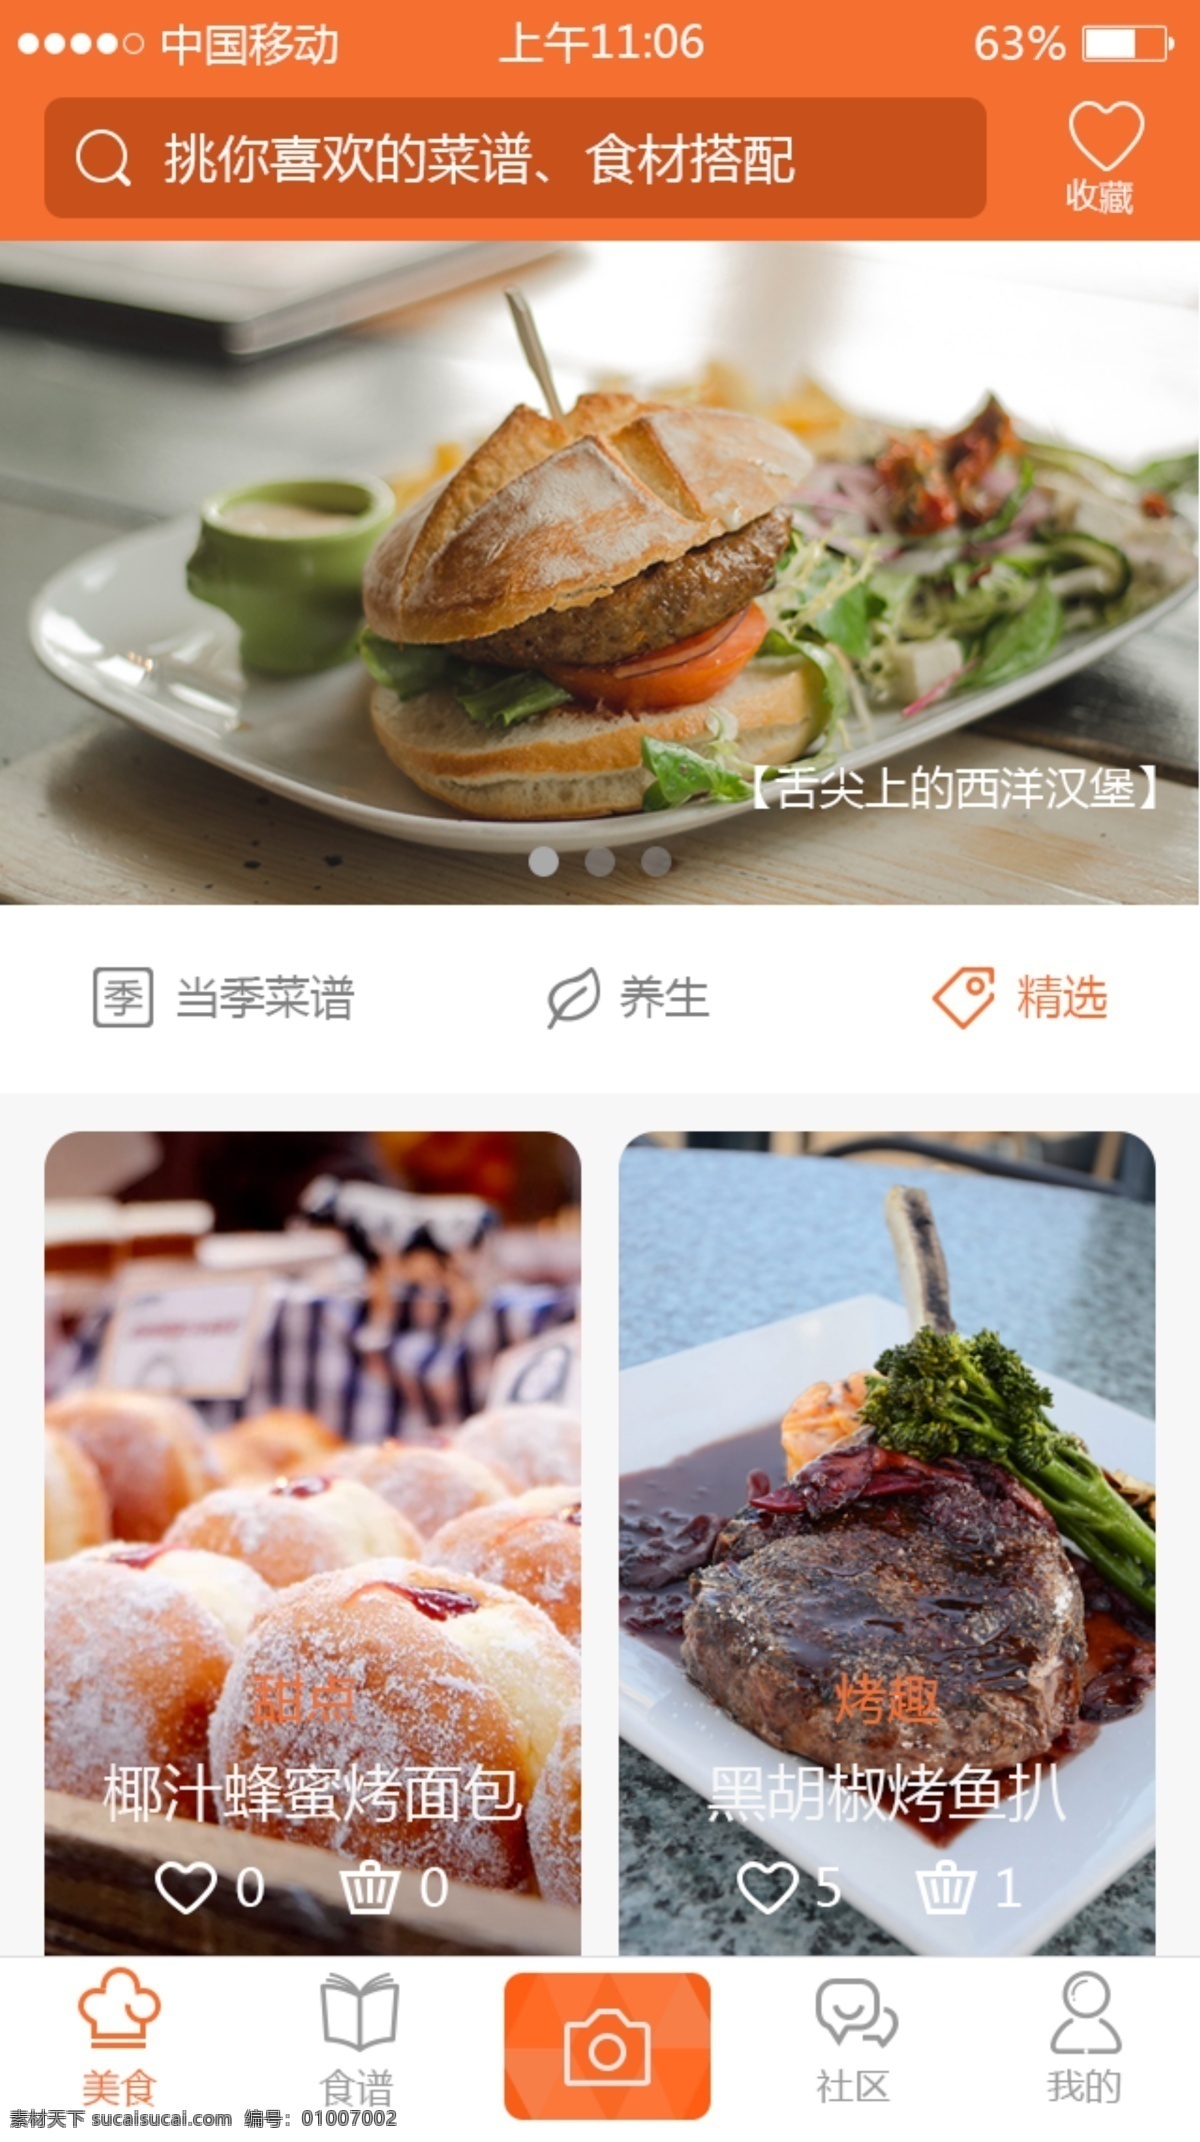 食谱 app 模板 食谱界面 ui界面 舌尖上的美食 app页面 页面设计 app模板 界面模板